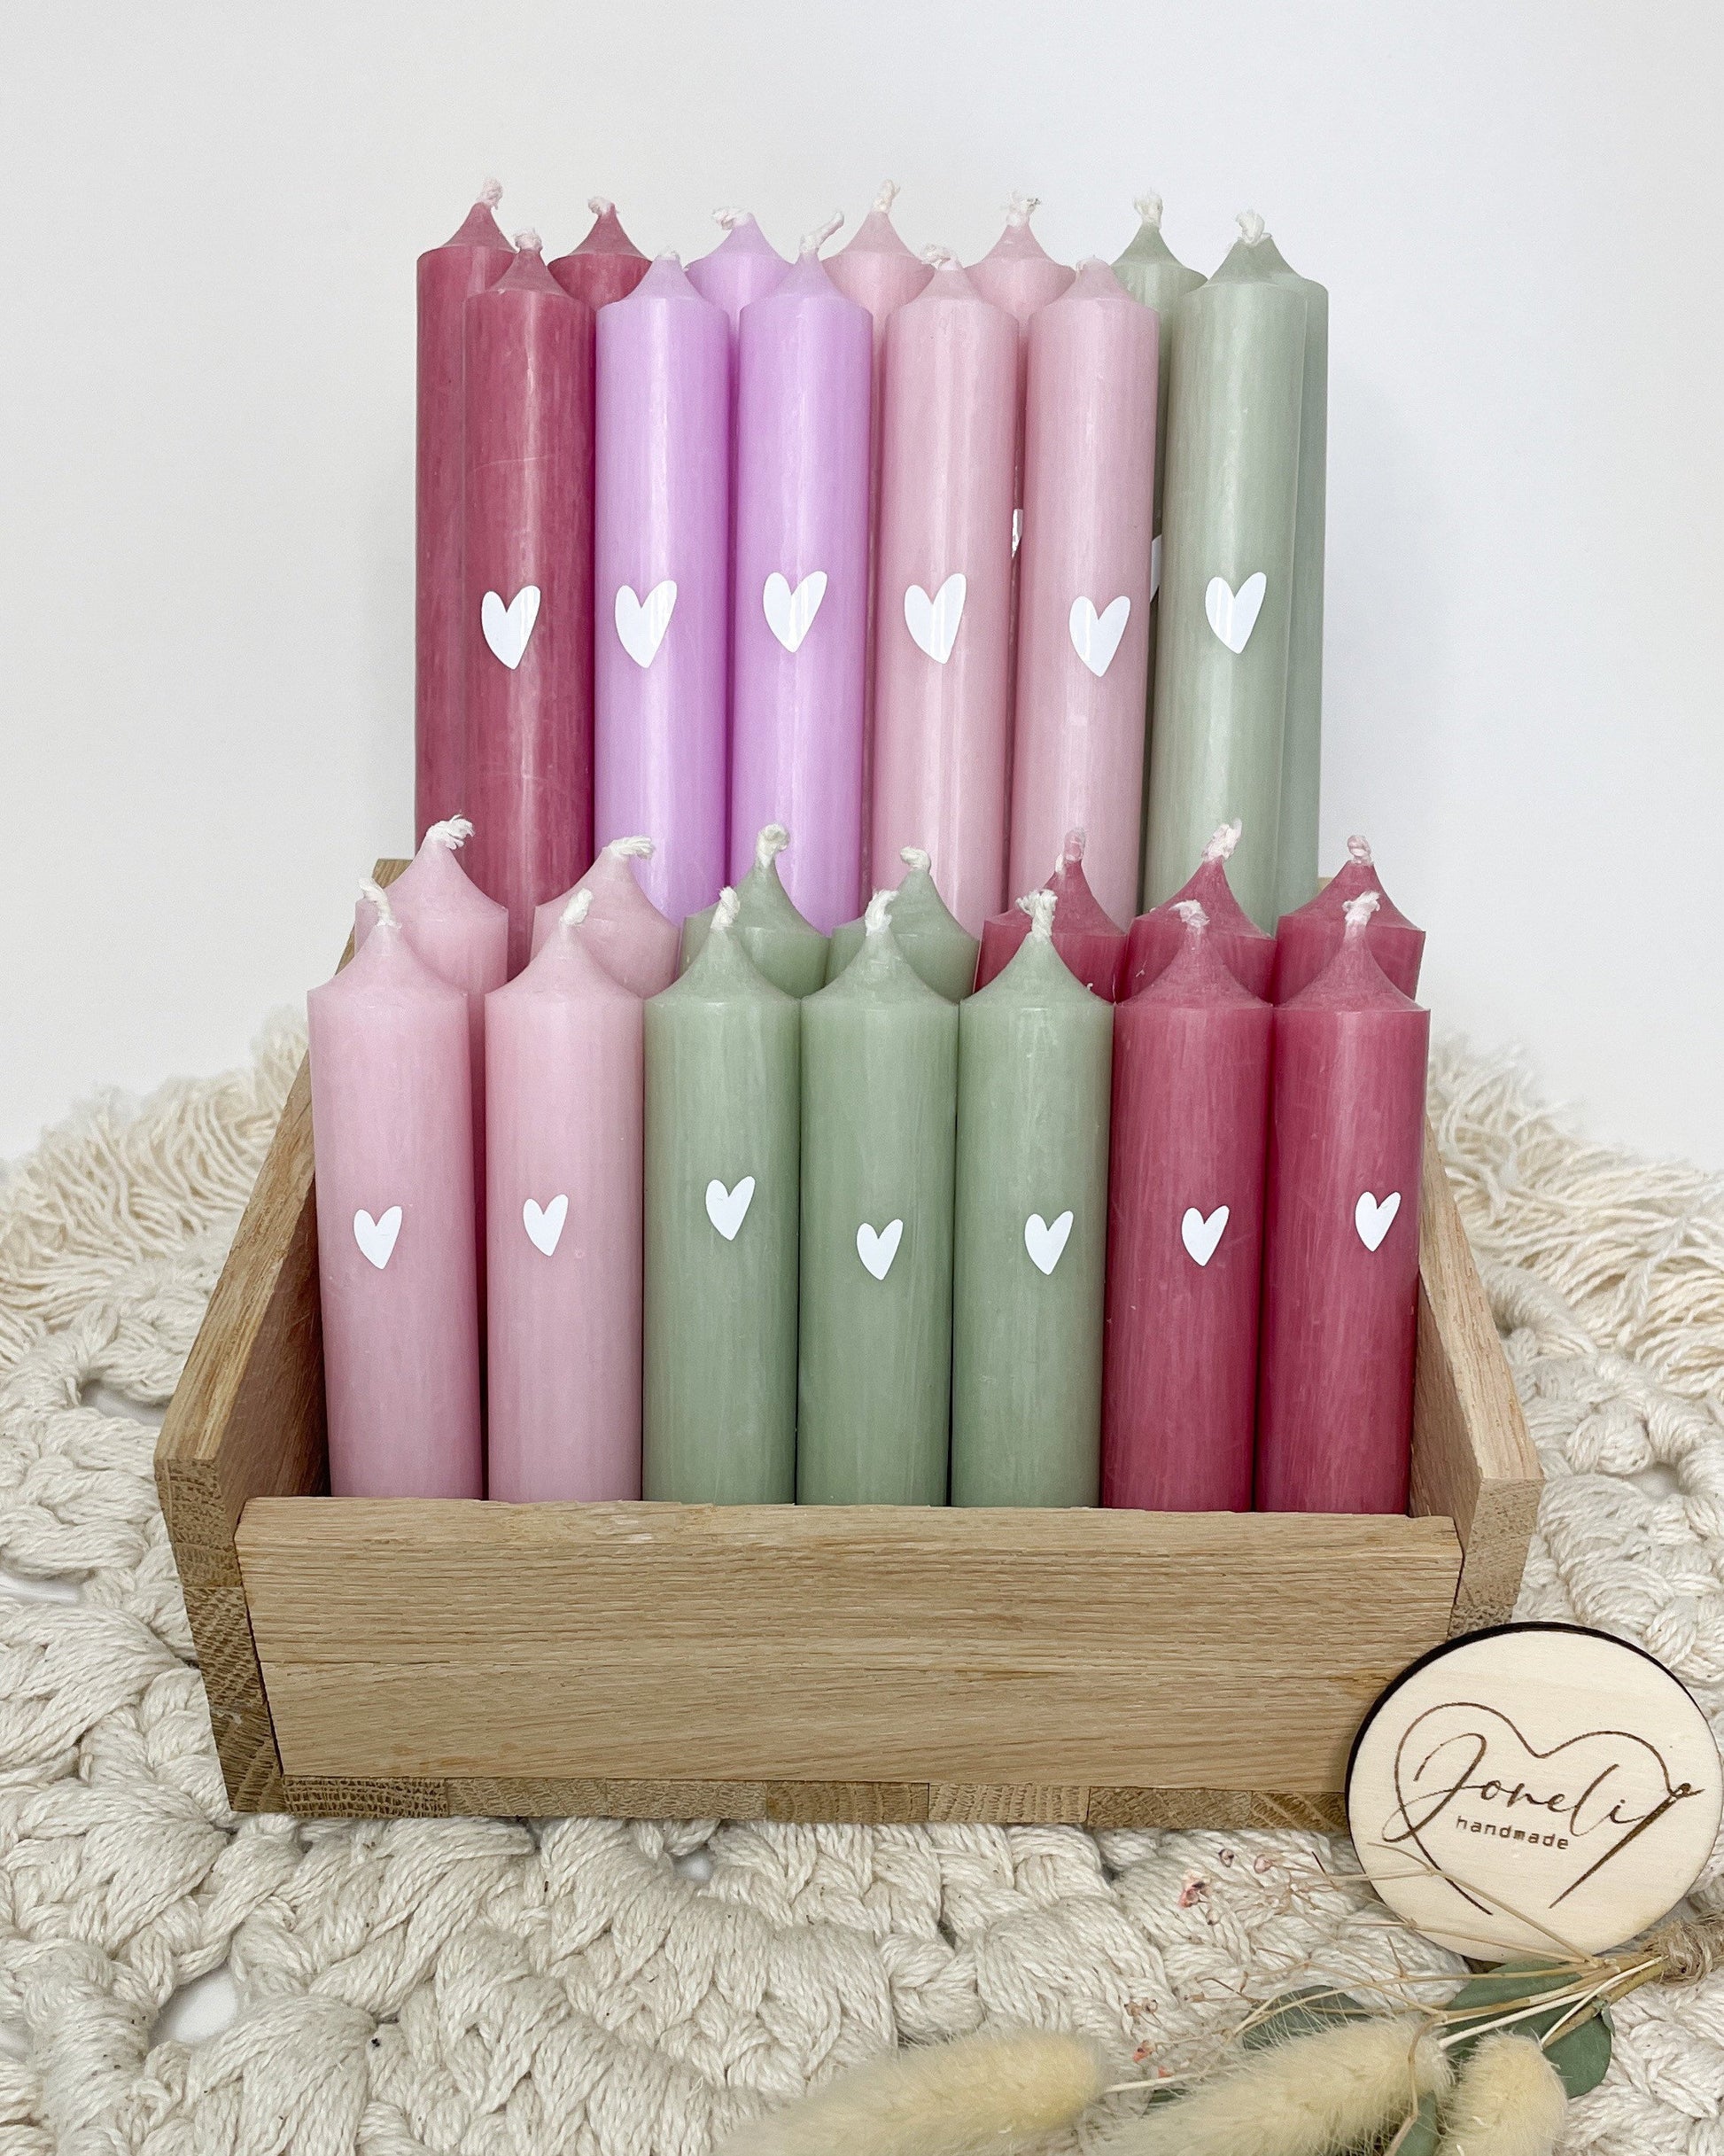 Geschenkset / Raysin Kerzenständer/ Regenbogen -Form / Kerze mit Herz und kleiner Grußbotschaft verschiedene Farben